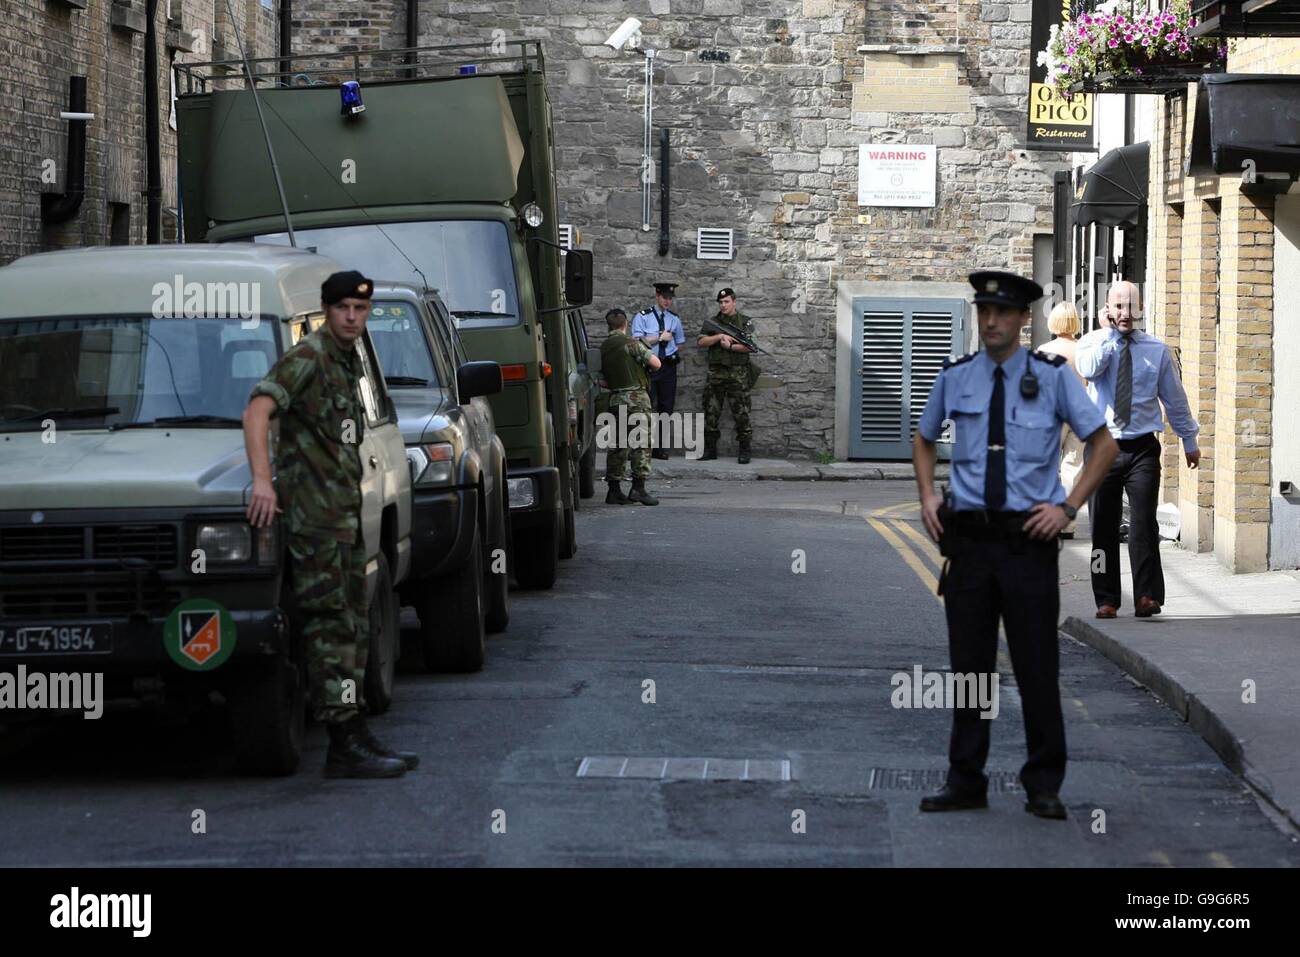 Los soldados patrullan las calles alrededor de la Casa Mansión en el centro de la ciudad de Dublín mientras una unidad especial realiza una búsqueda de un dispositivo sospechoso. Foto de stock